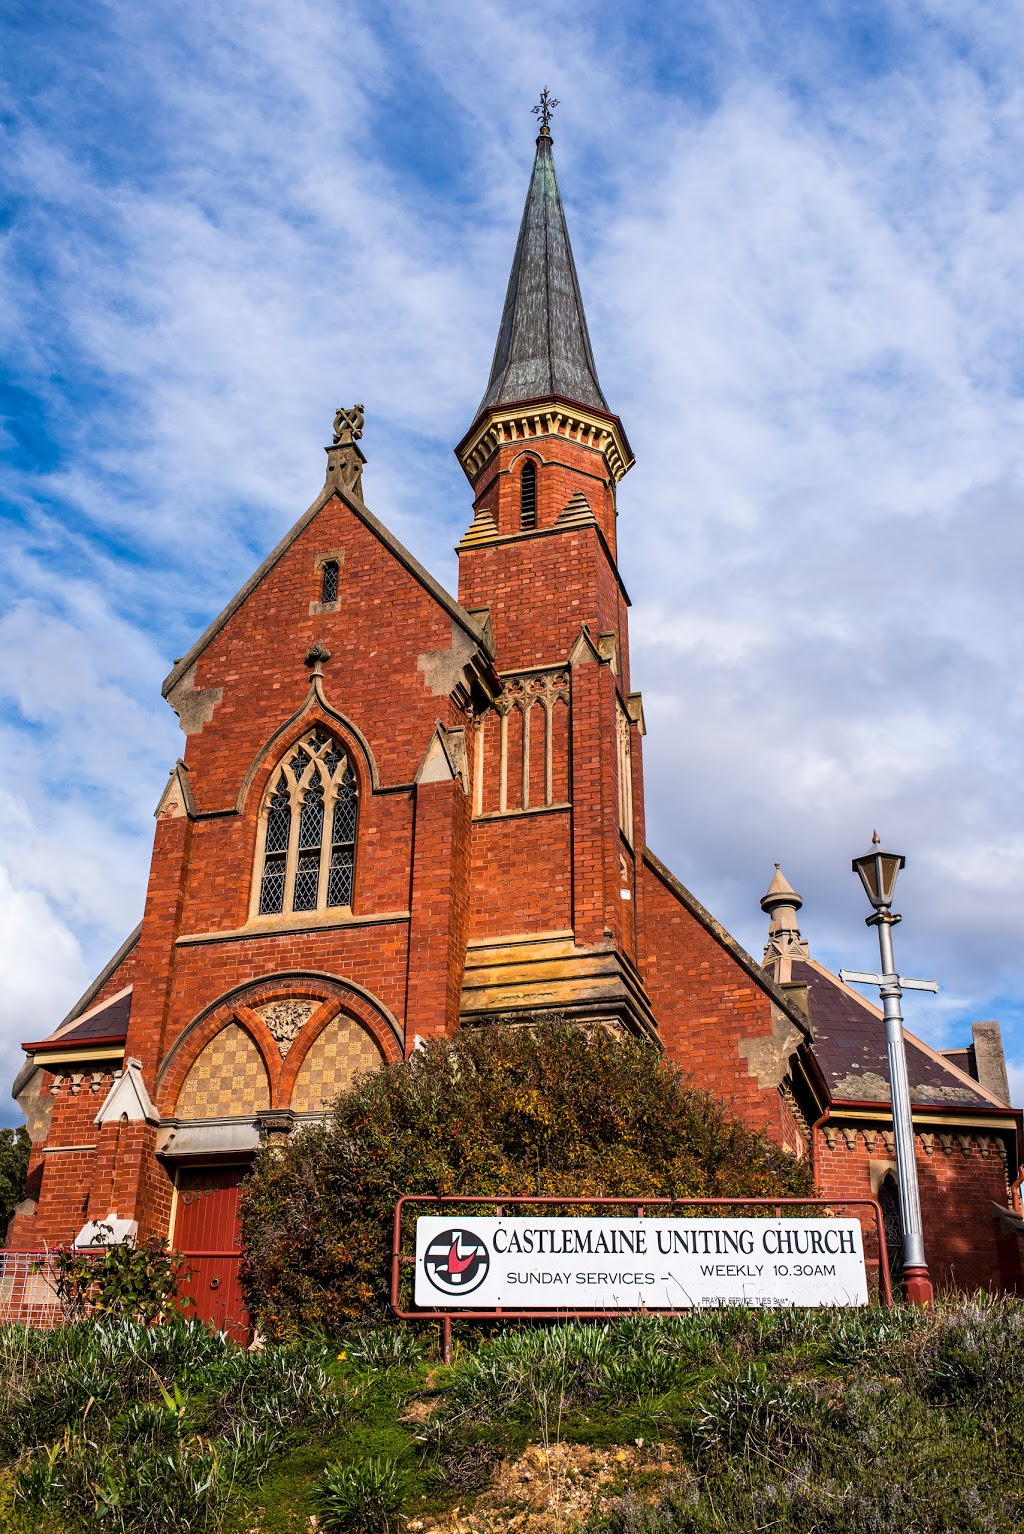 Castlemaine Uniting Church | church | 24 Lyttleton St, Castlemaine VIC 3450, Australia | 0354721489 OR +61 3 5472 1489